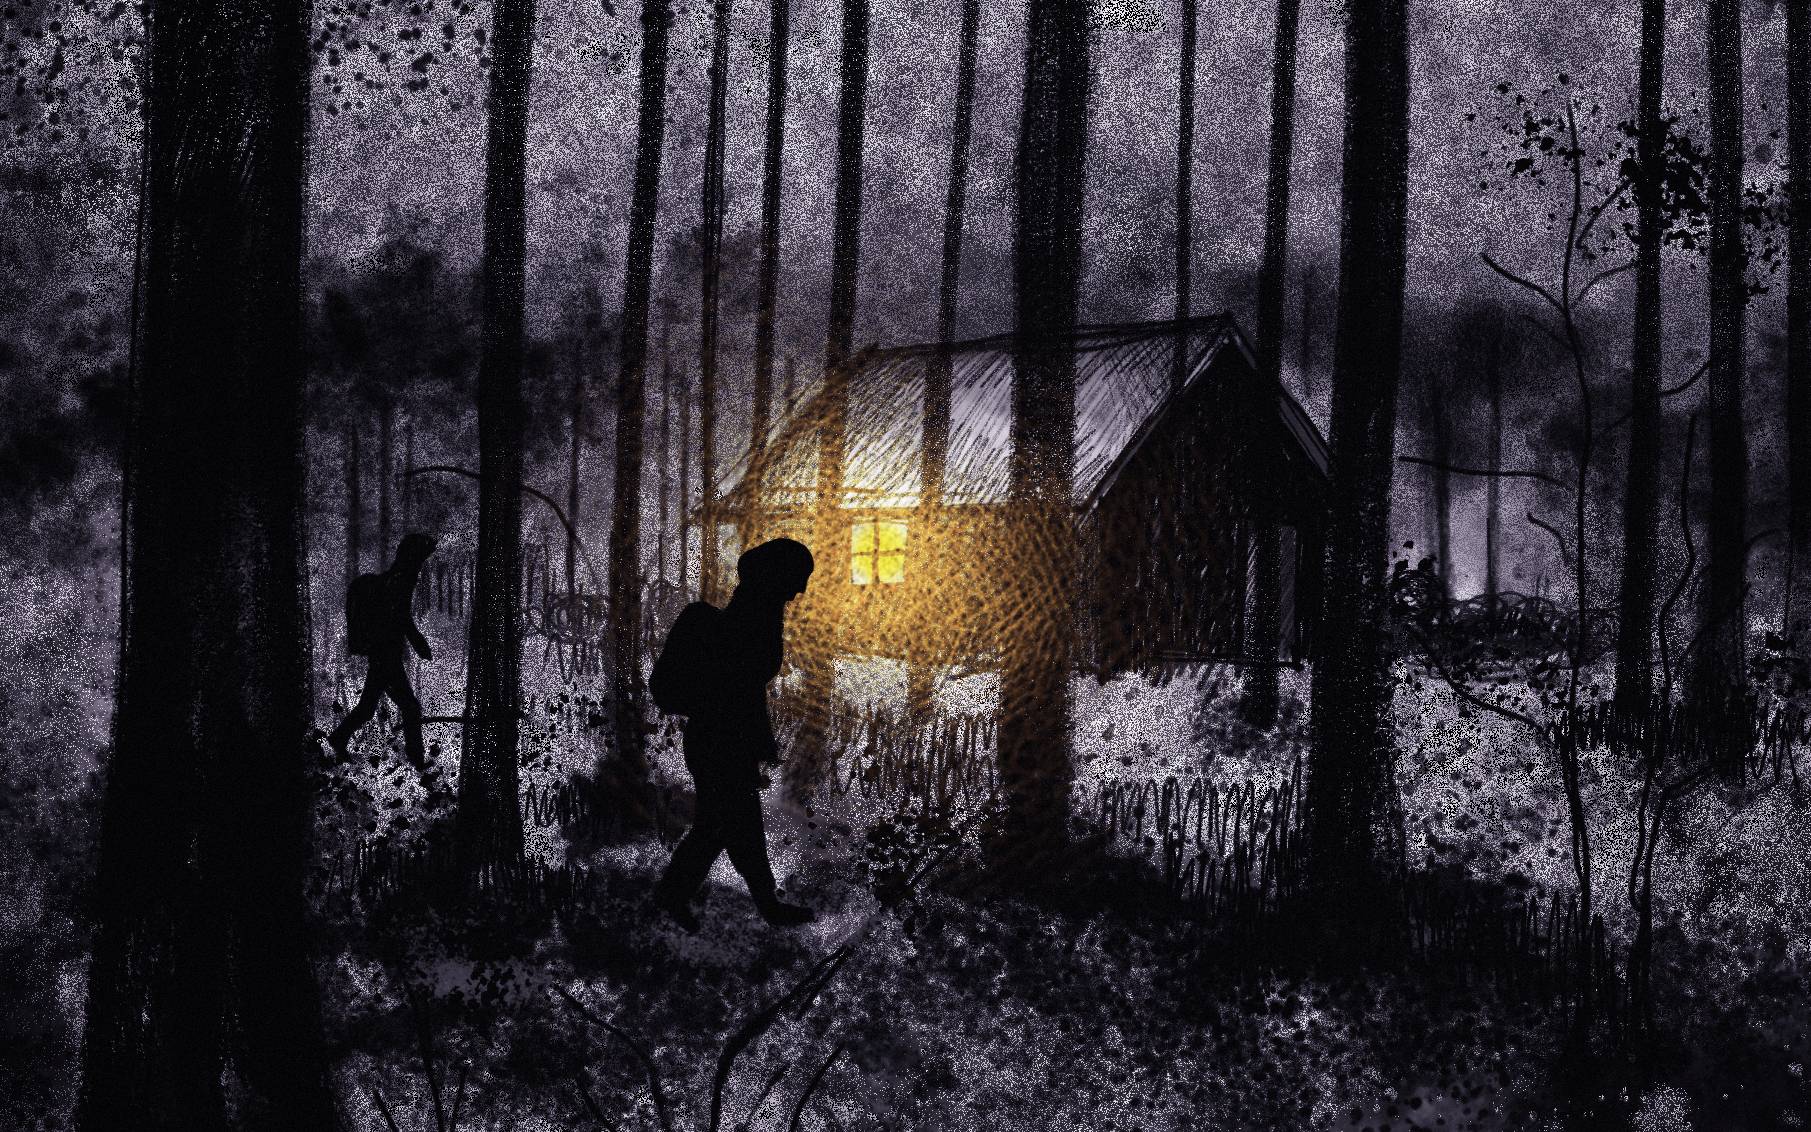 ilustracja przedstawia wędrowca w ciemnym lesie i chatkę z rozświetlonym oknem